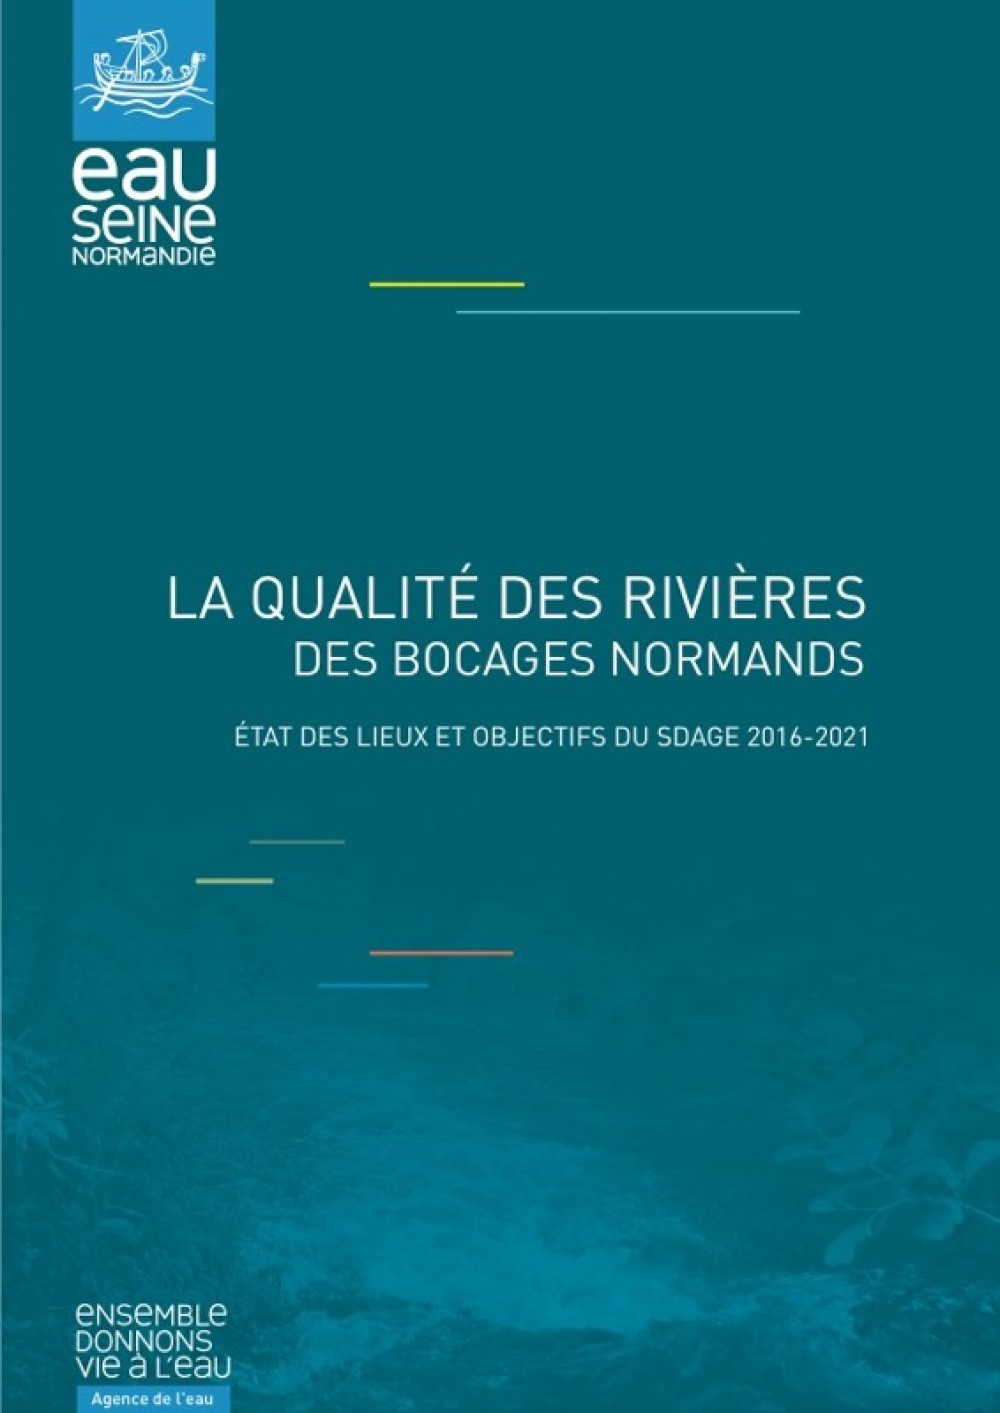 [Publication] La qualité des rivières des bocages normands - Etat des lieux et objectifs du SDAGE 2016-2021